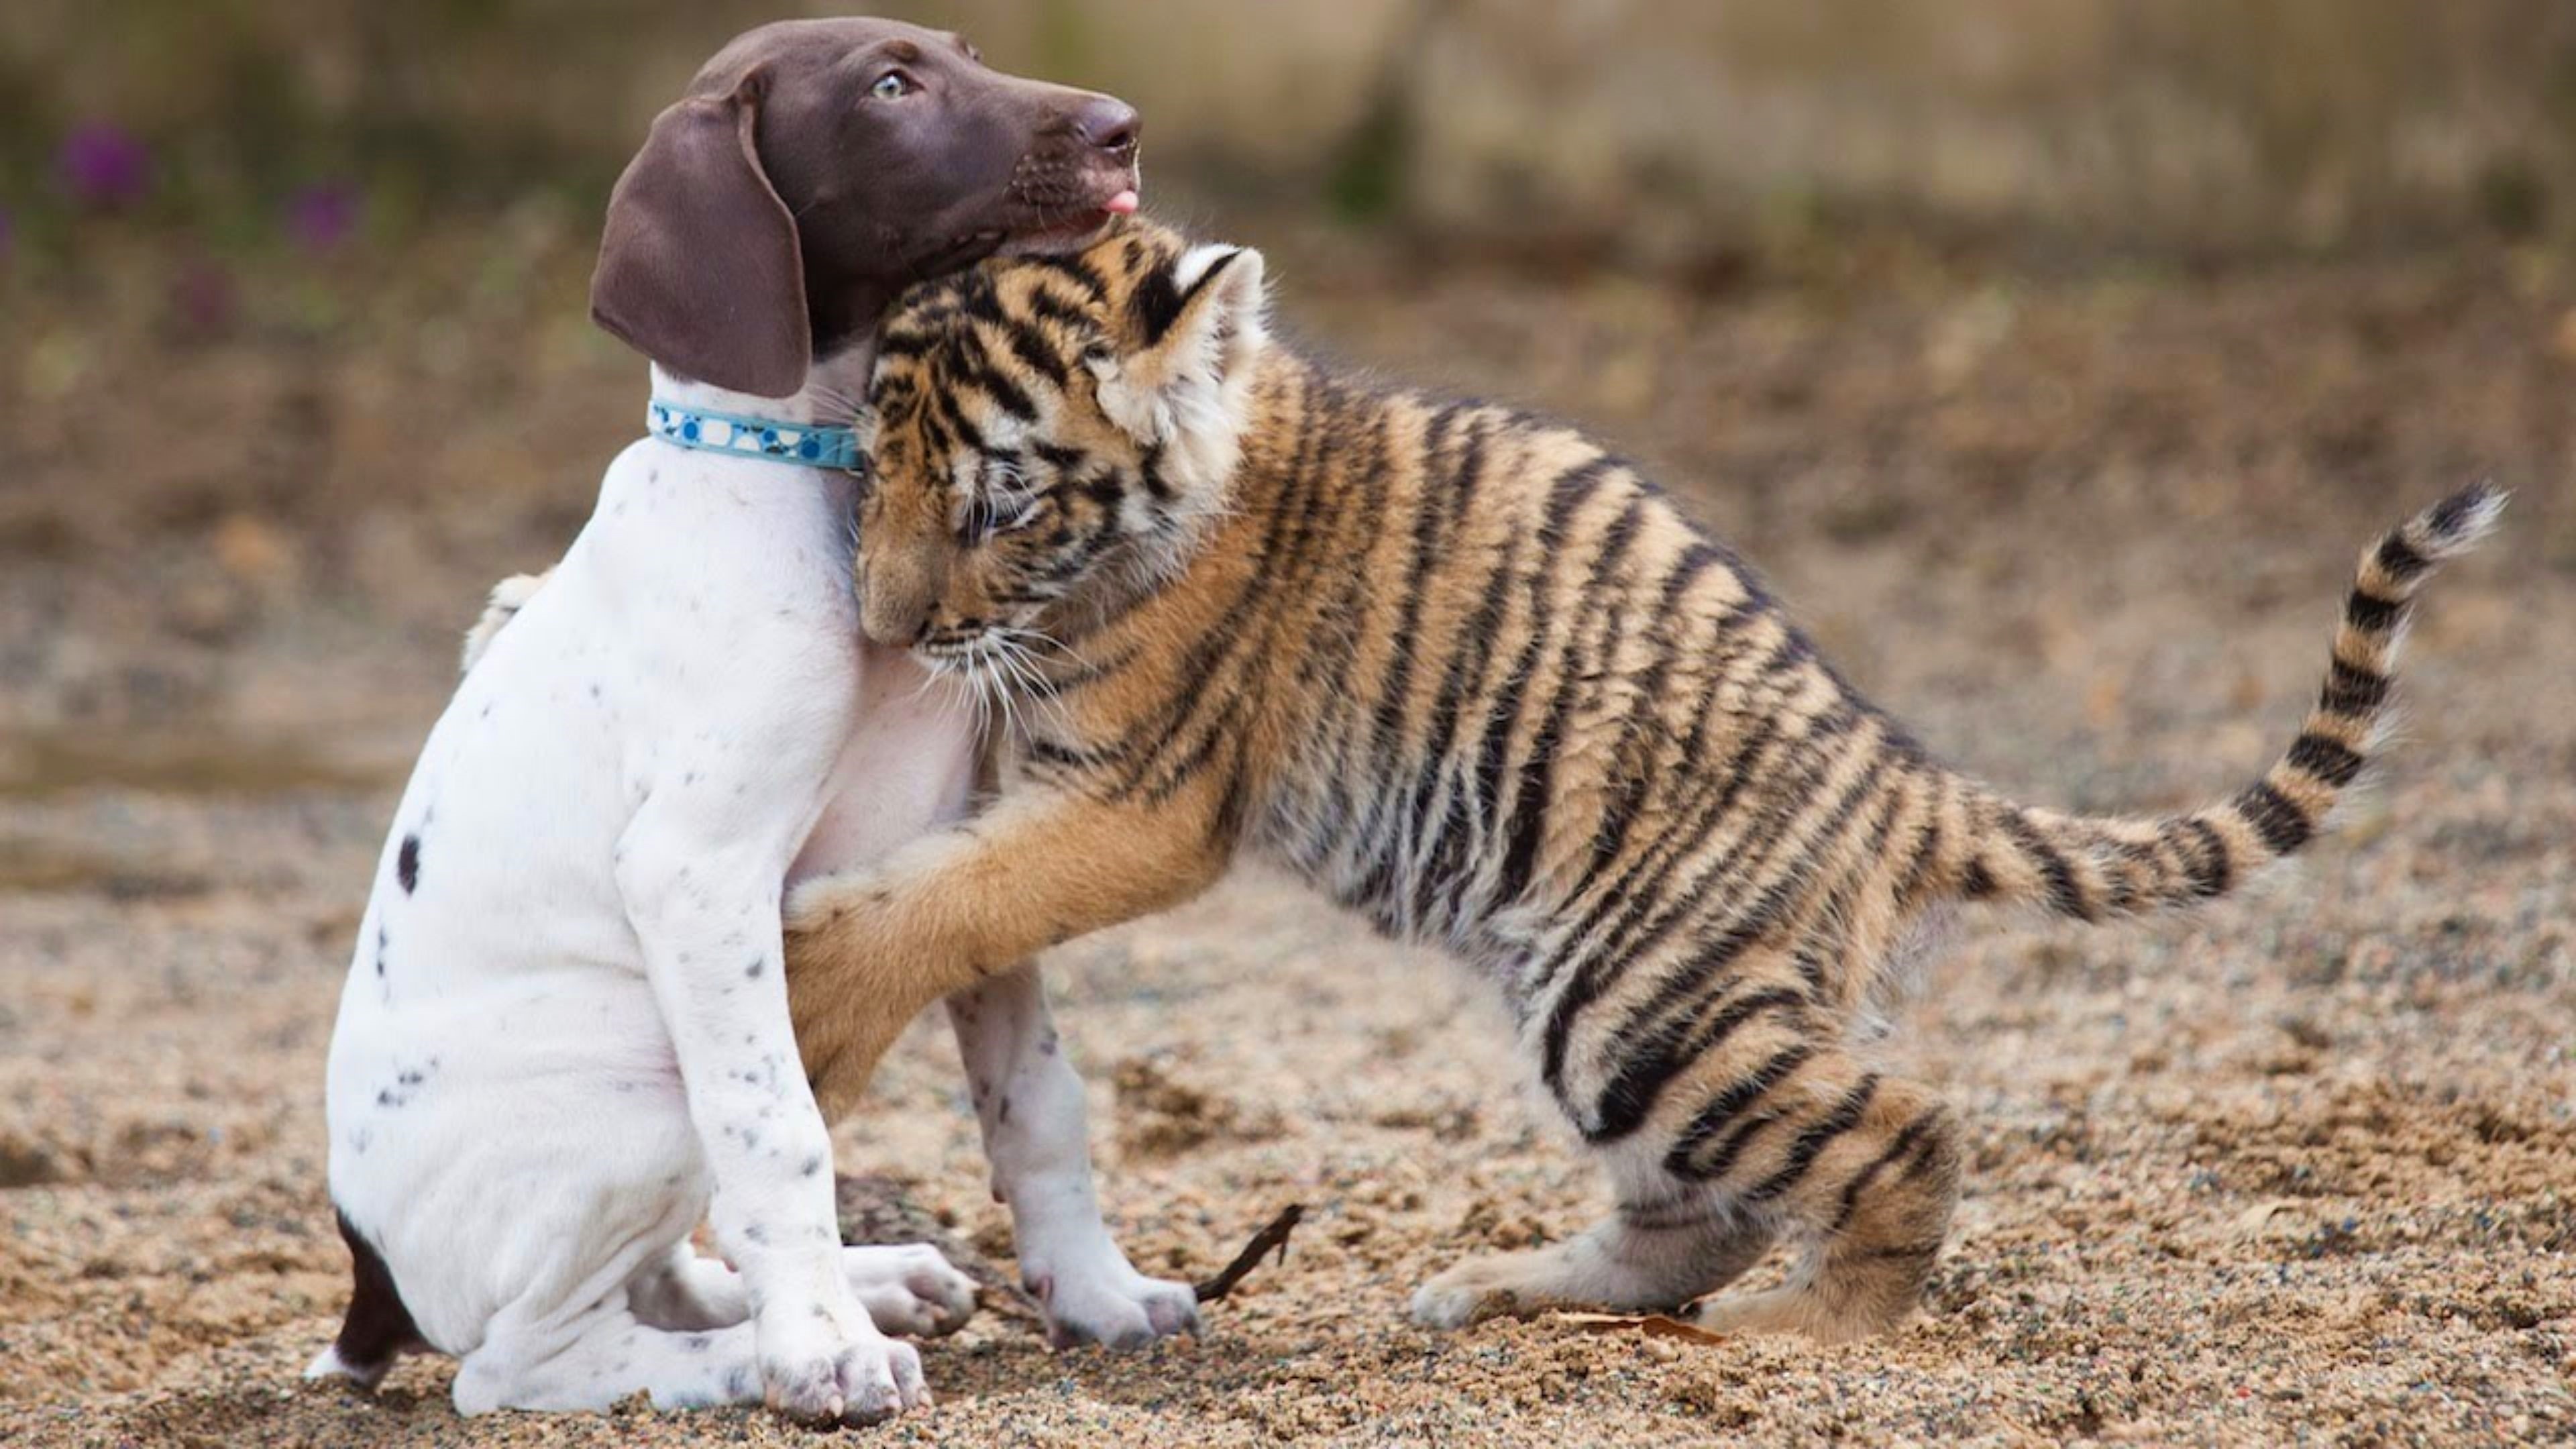 Cute dog hug, Loving bond, Tiger wallpaper, Heartwarming image, 3840x2160 4K Desktop